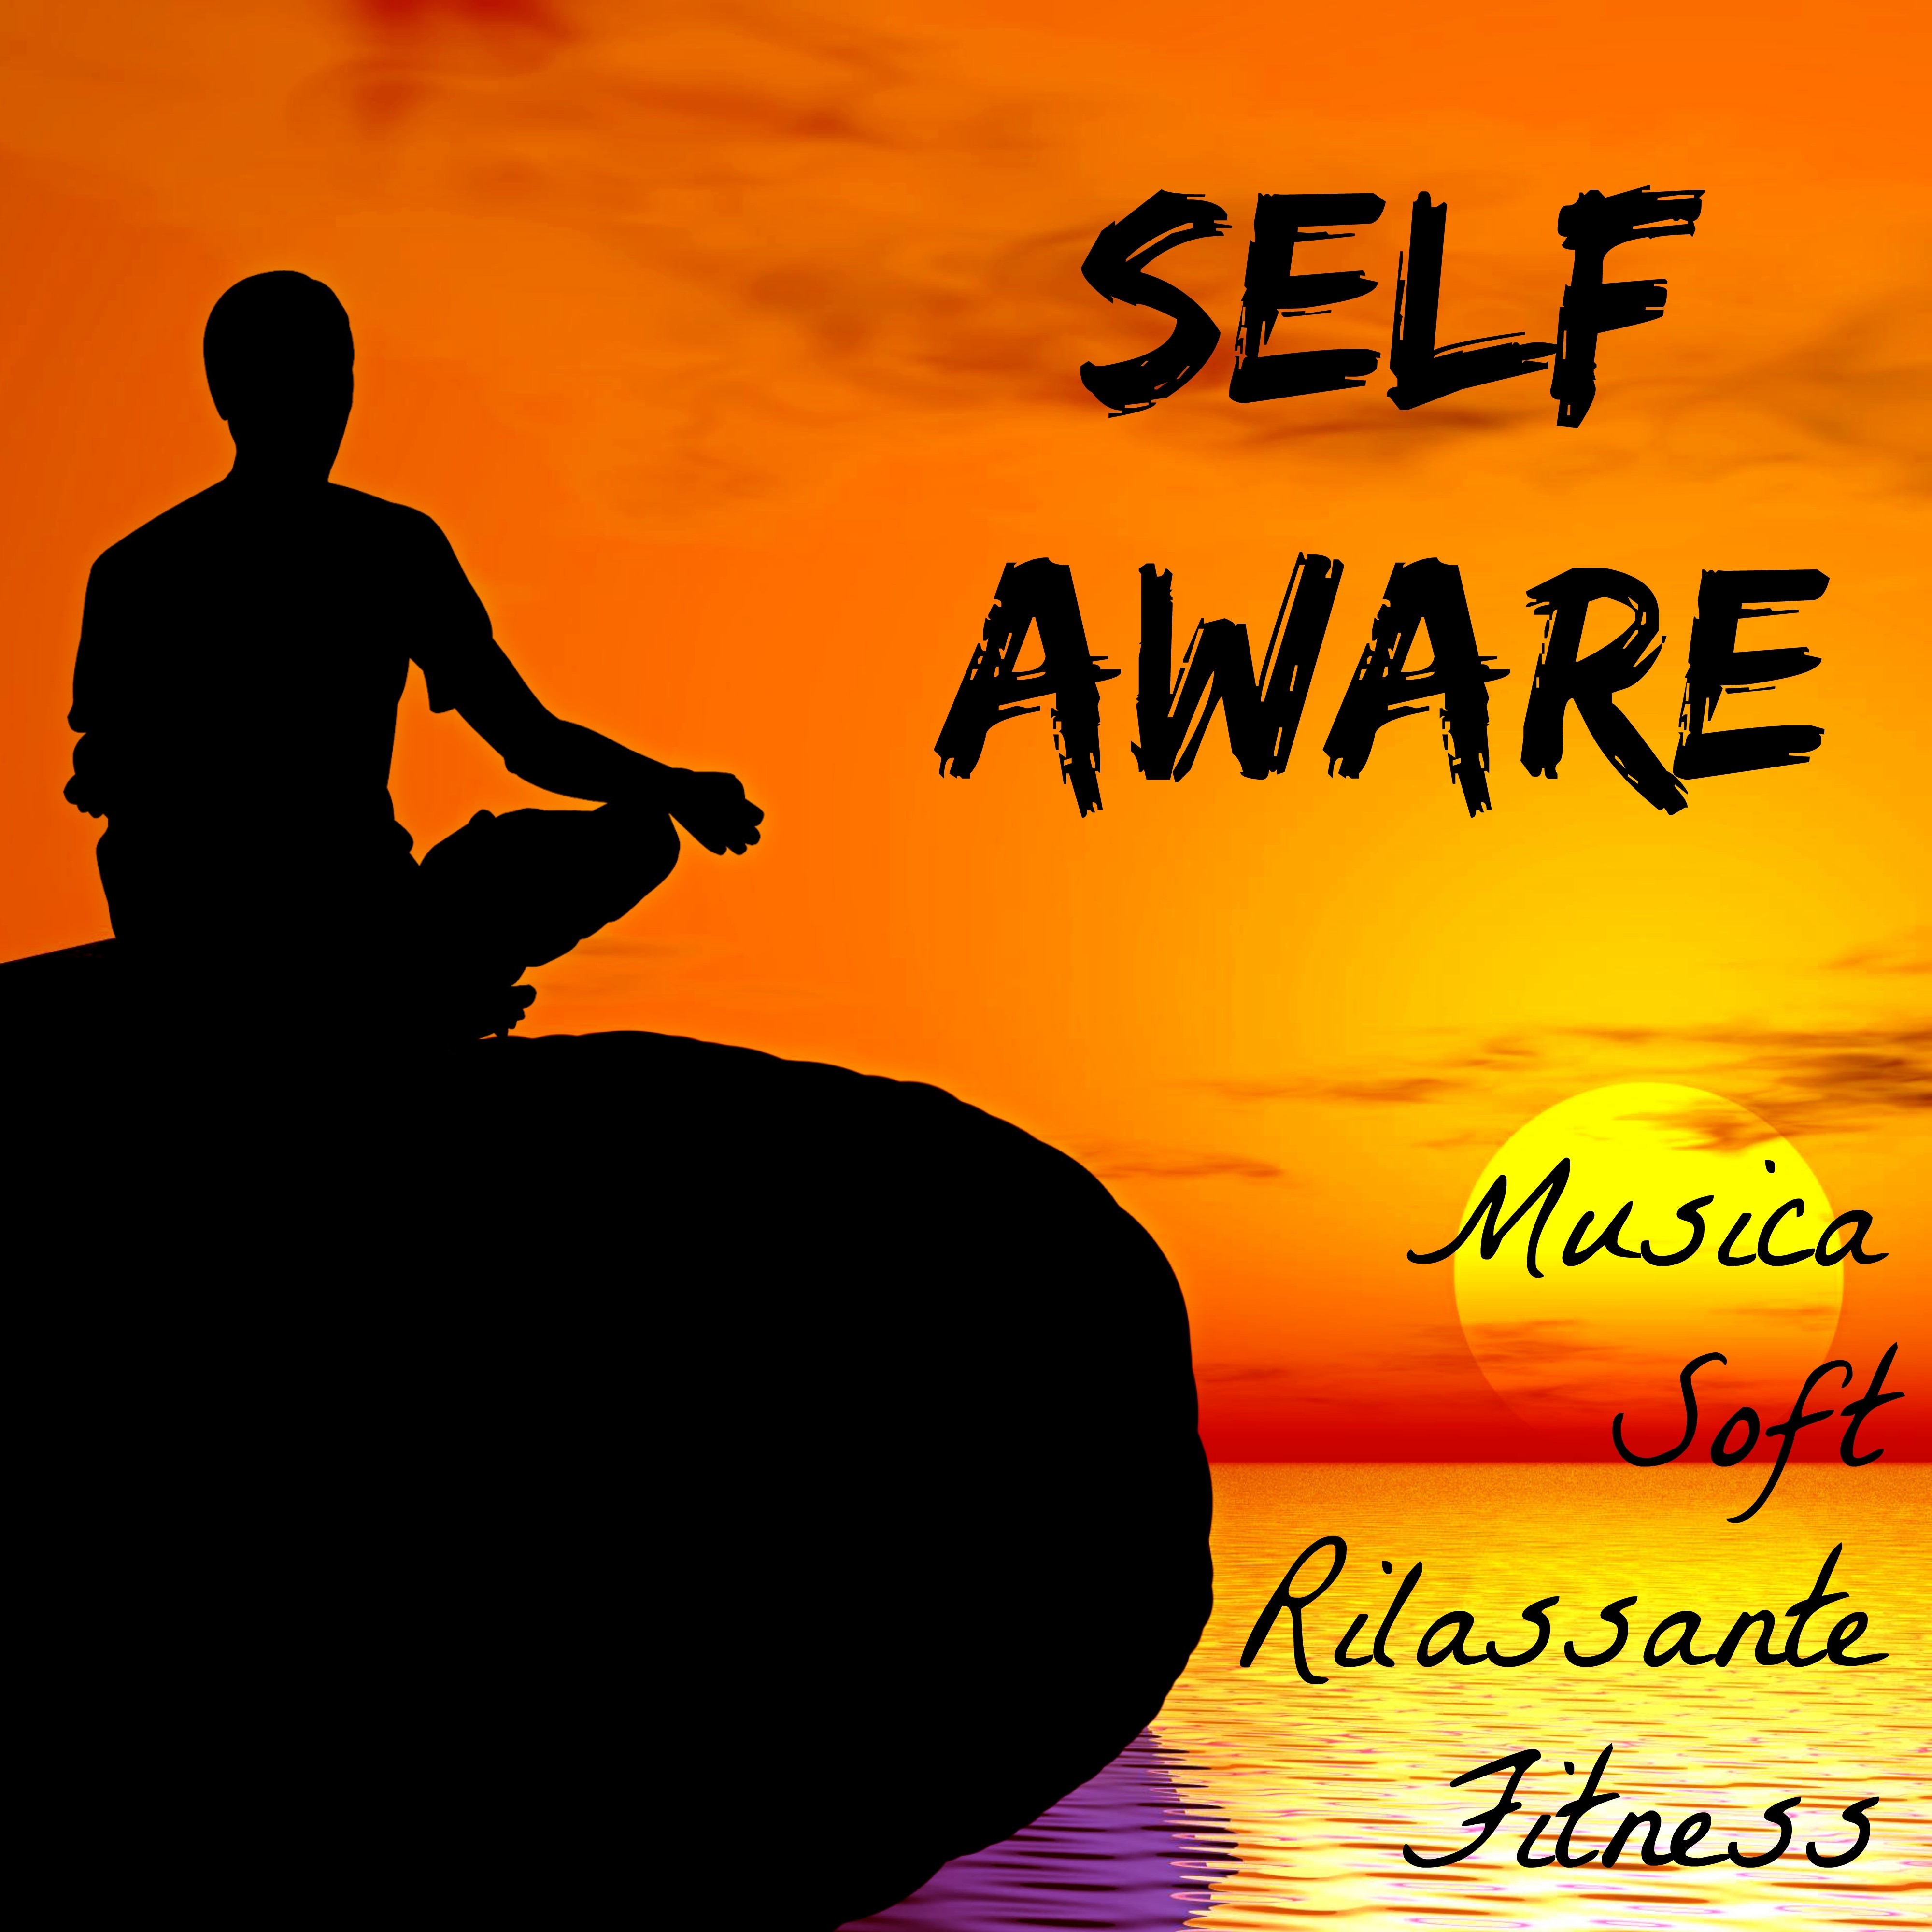 Self Aware - Musica Soft Rilassante per Concentrazione e Fitness con Suoni Lounge New Age Dance Strumentali